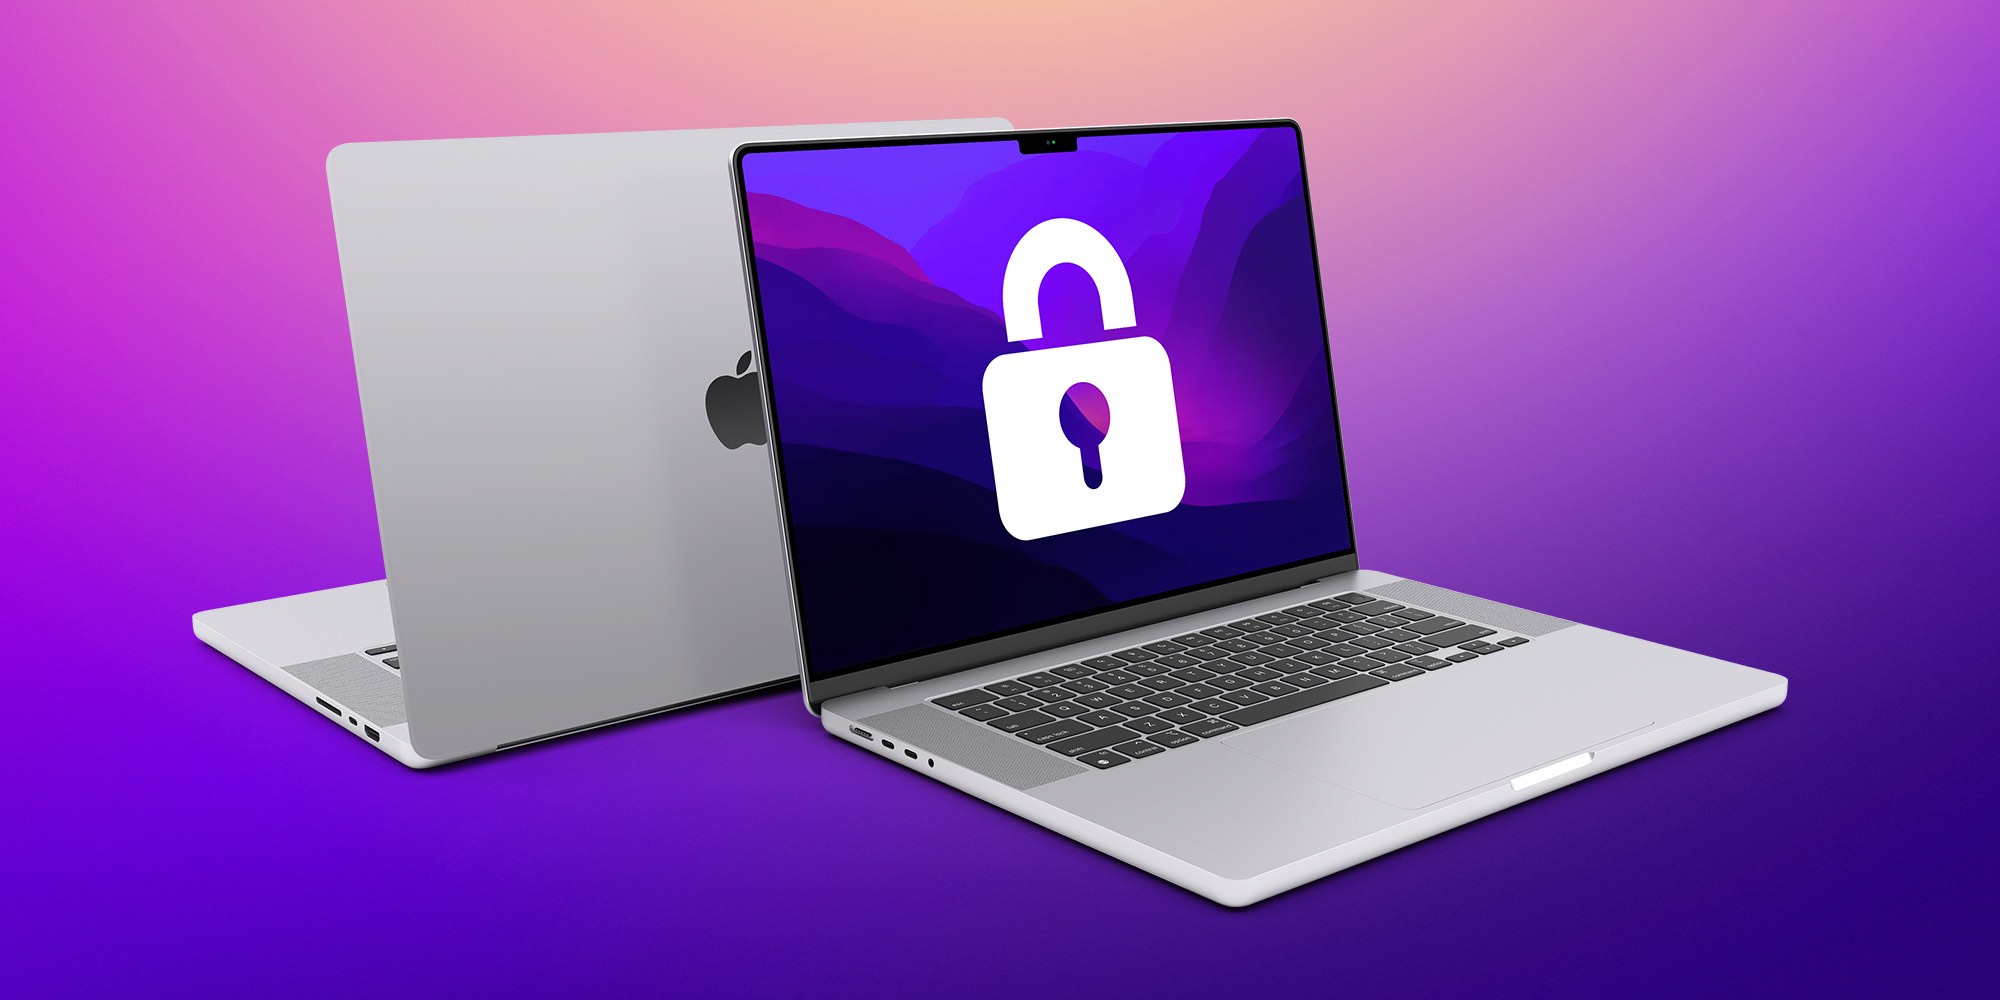 Cuộc khảo sát của IDC cho thấy, khả năng bảo mật của  máy tính Mac không phải lời đồn vô căn cứ - Ảnh 1.